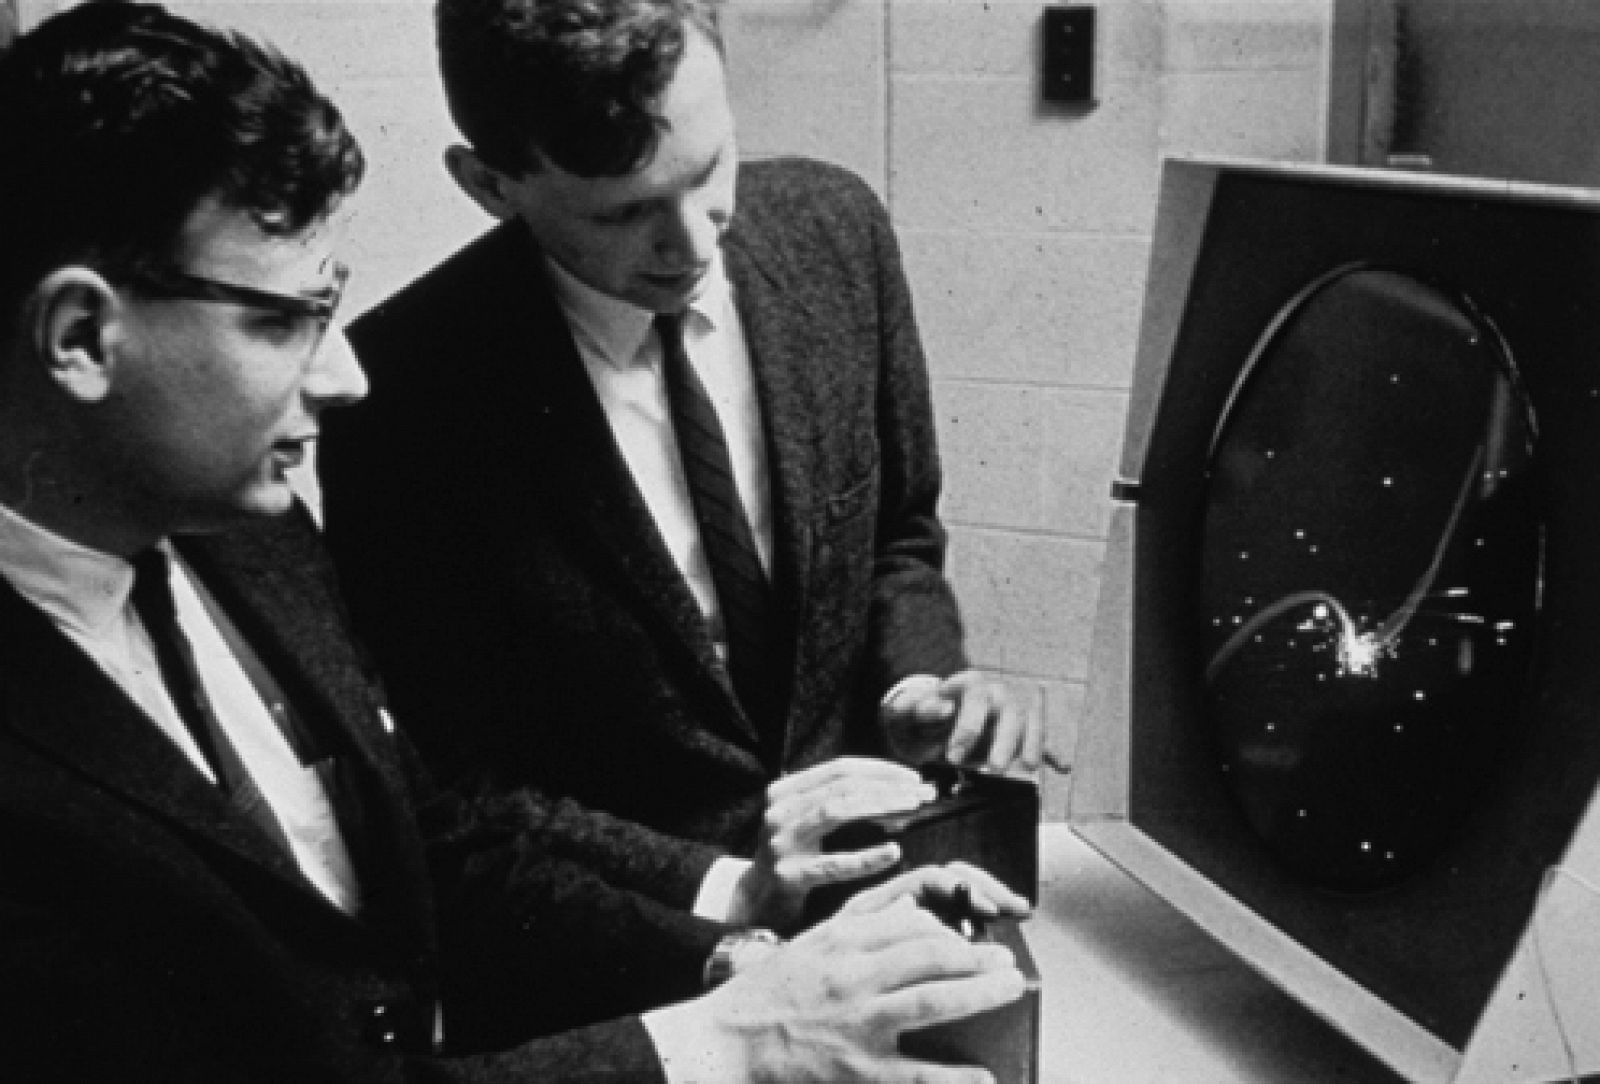 Revisitando el «Spacewar» del MIT, uno de los videojuegos míticos ahora recuperado mediante emulación